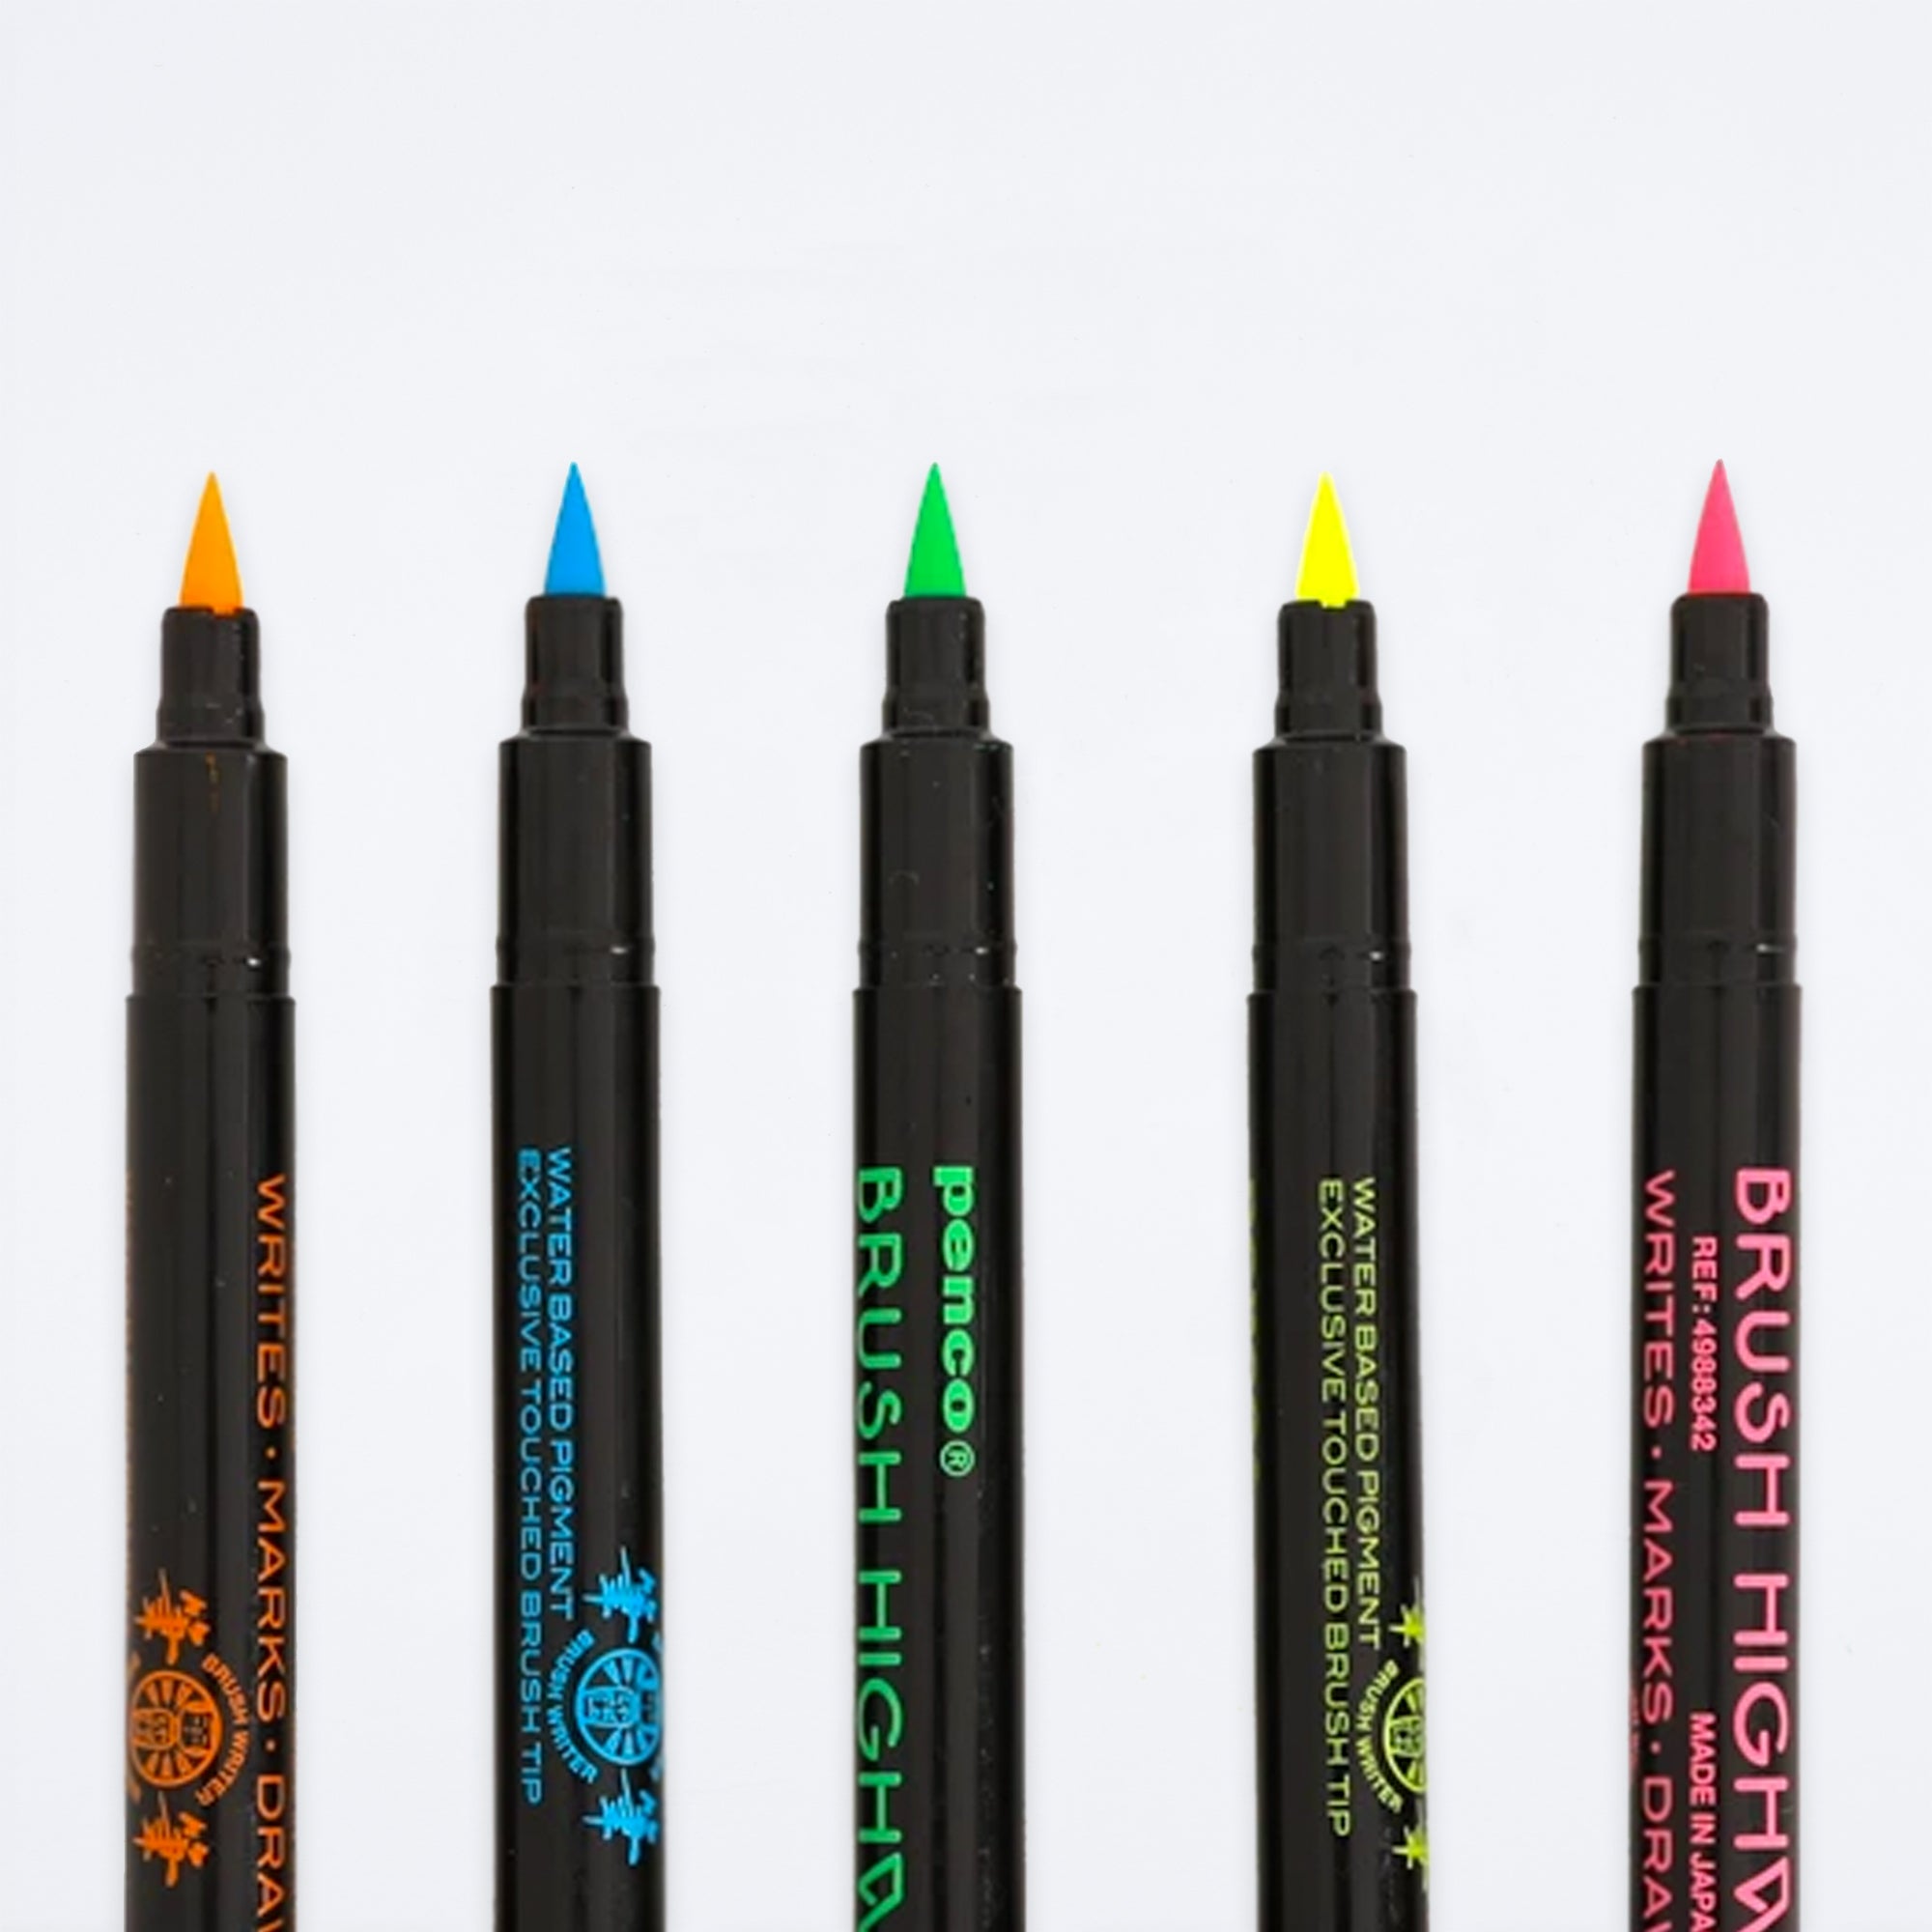 Highlighter Brush Pen Set